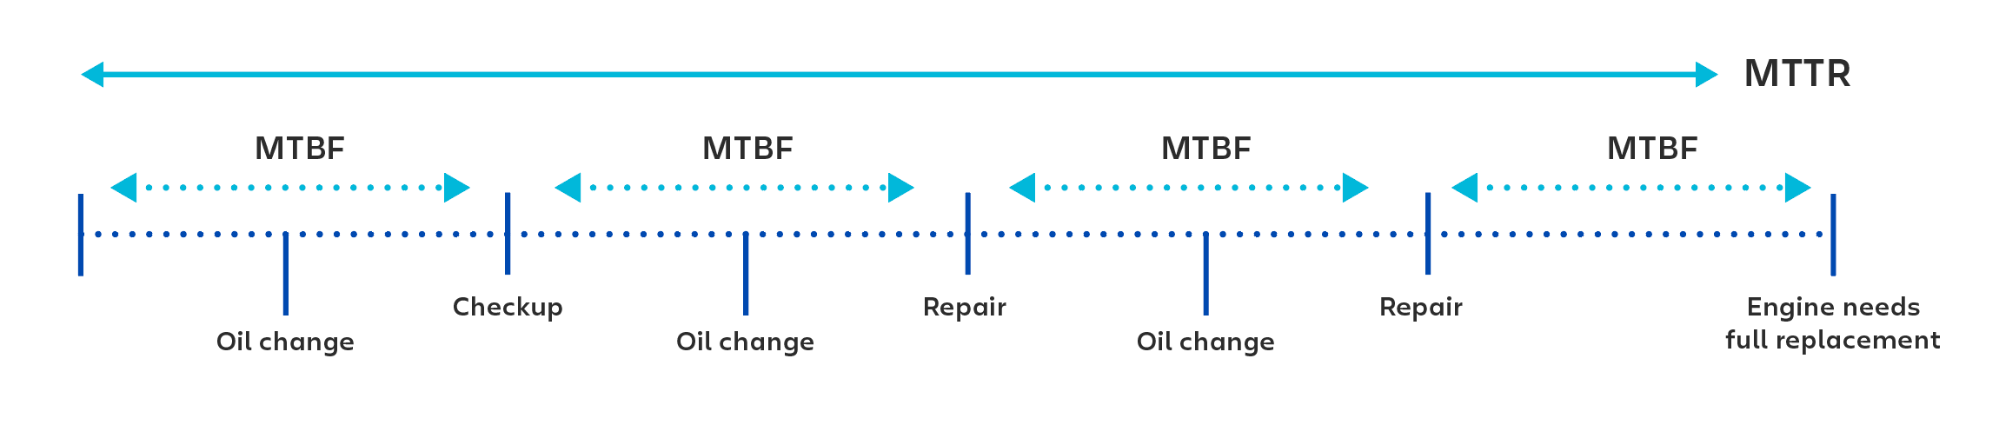 Wizualny przykład użycia wskaźnika średniego czasu bezawaryjnej pracy (MTBF) do obliczania czasu między poszczególnymi kontrolami lub naprawami.